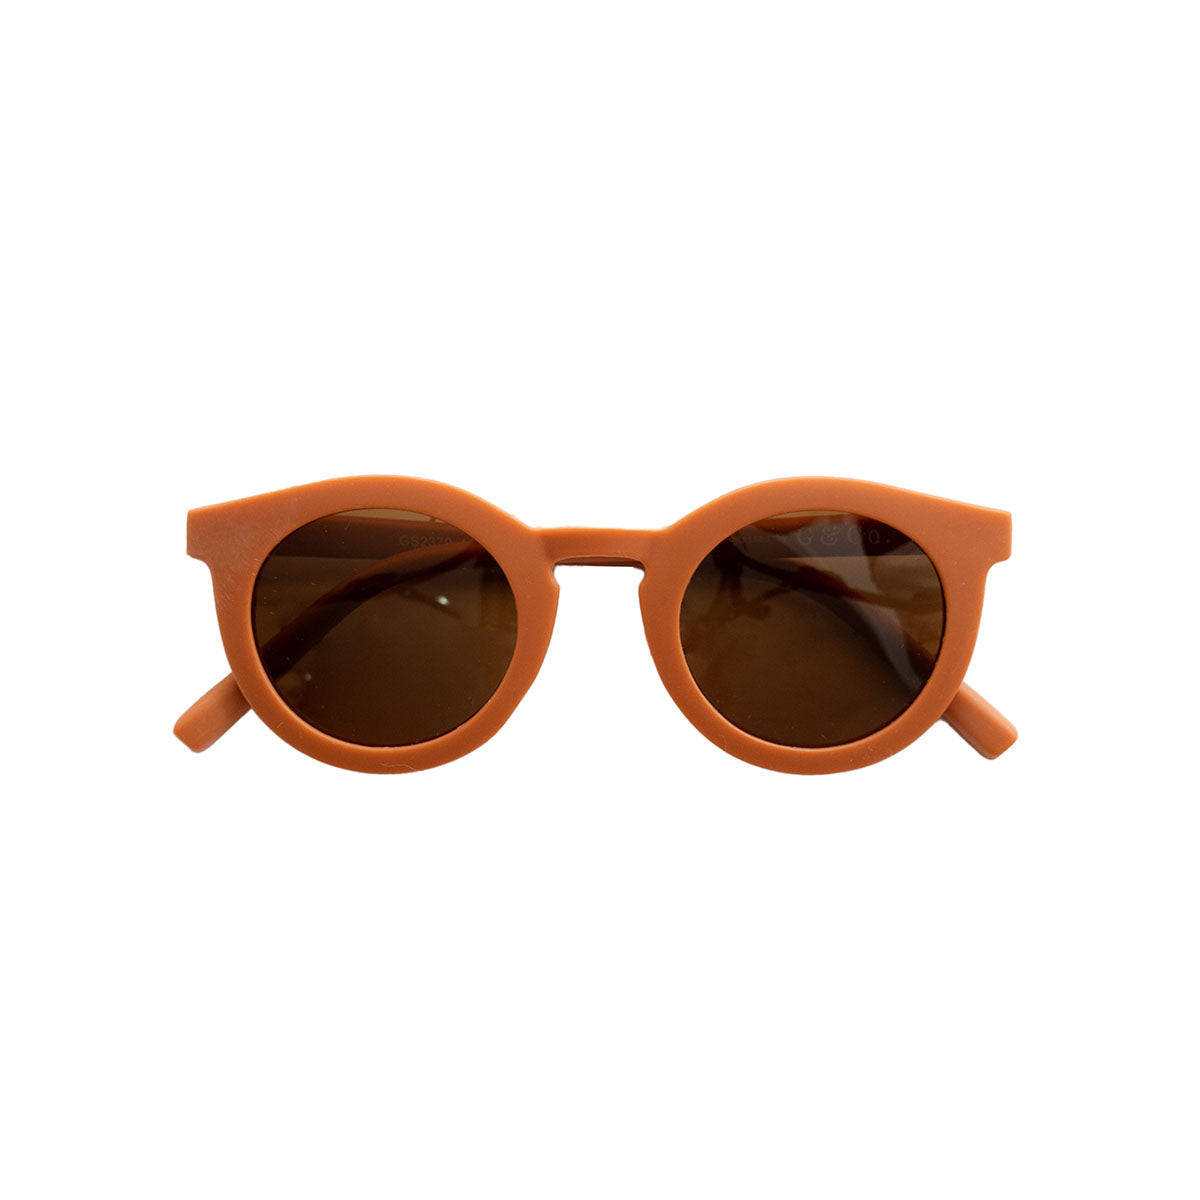 De Grech & co. zonnebril classic adult in de kleur rust is de perfecte keuze voor trendy en modebewuste moeders en hun mini-me’s. De zonnebril is namelijk ook beschikbaar voor kinderen! VanZus